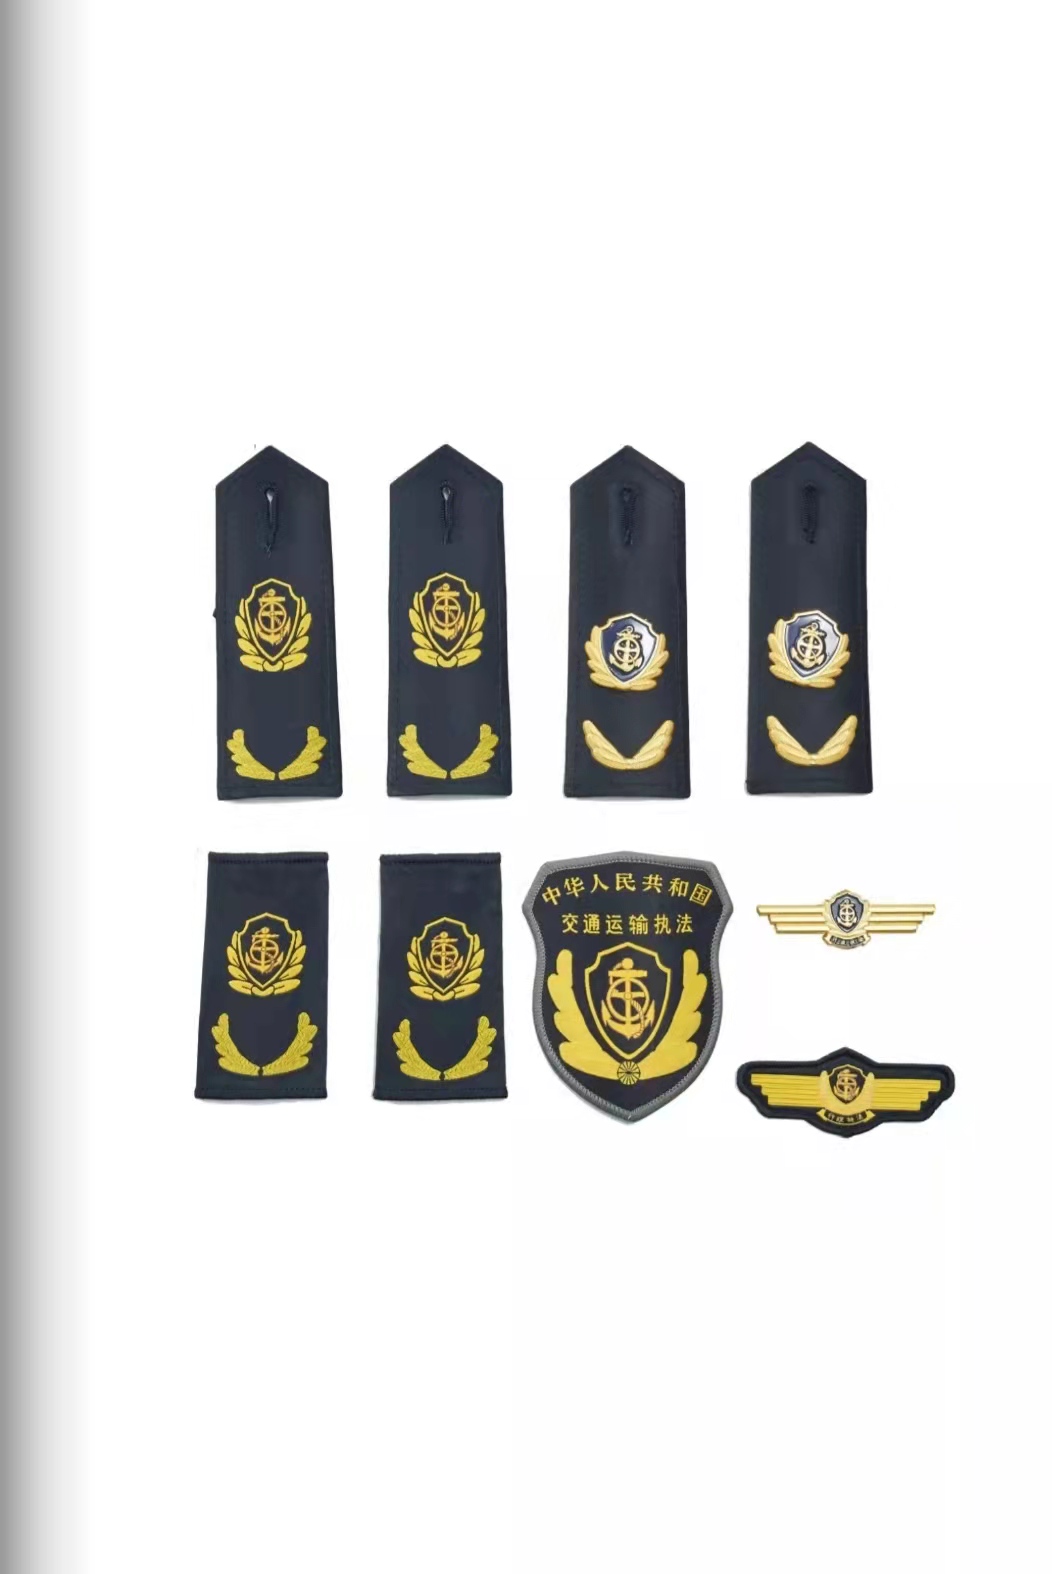 乌鲁木齐六部门统一交通运输执法服装标志